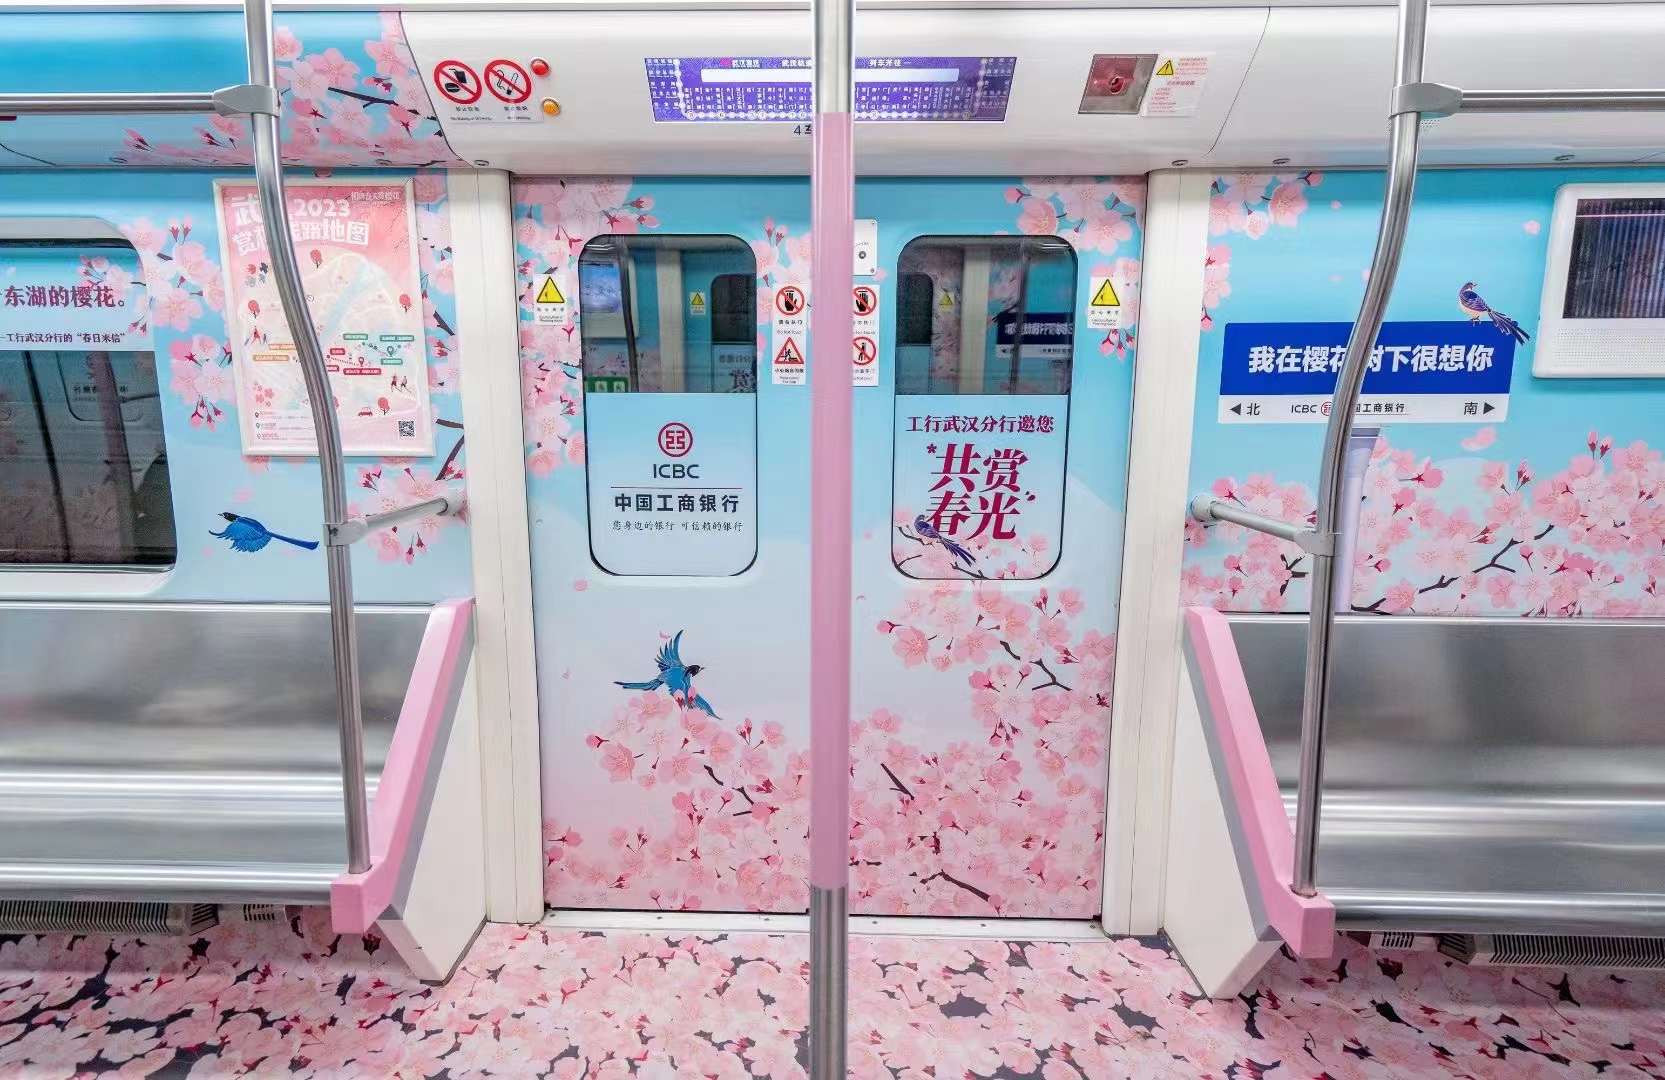 深圳地铁丰富多彩的广告展现形式